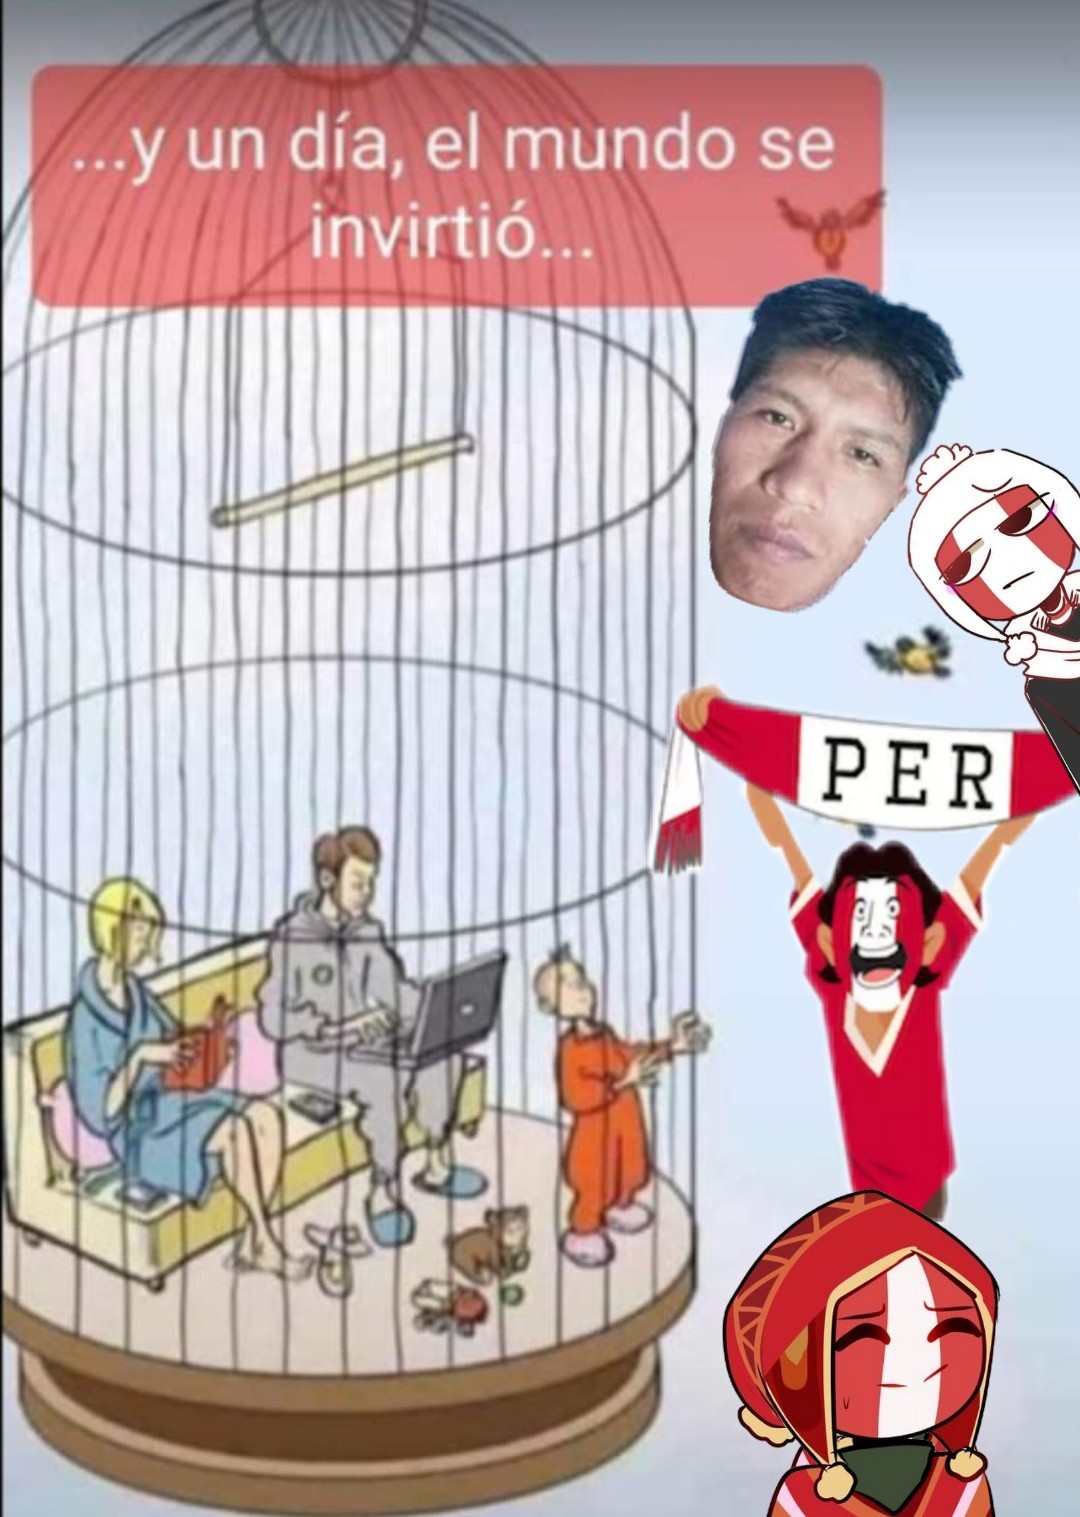 Que hacen los peruanos fuera de sus jaulas ? >:0 - meme